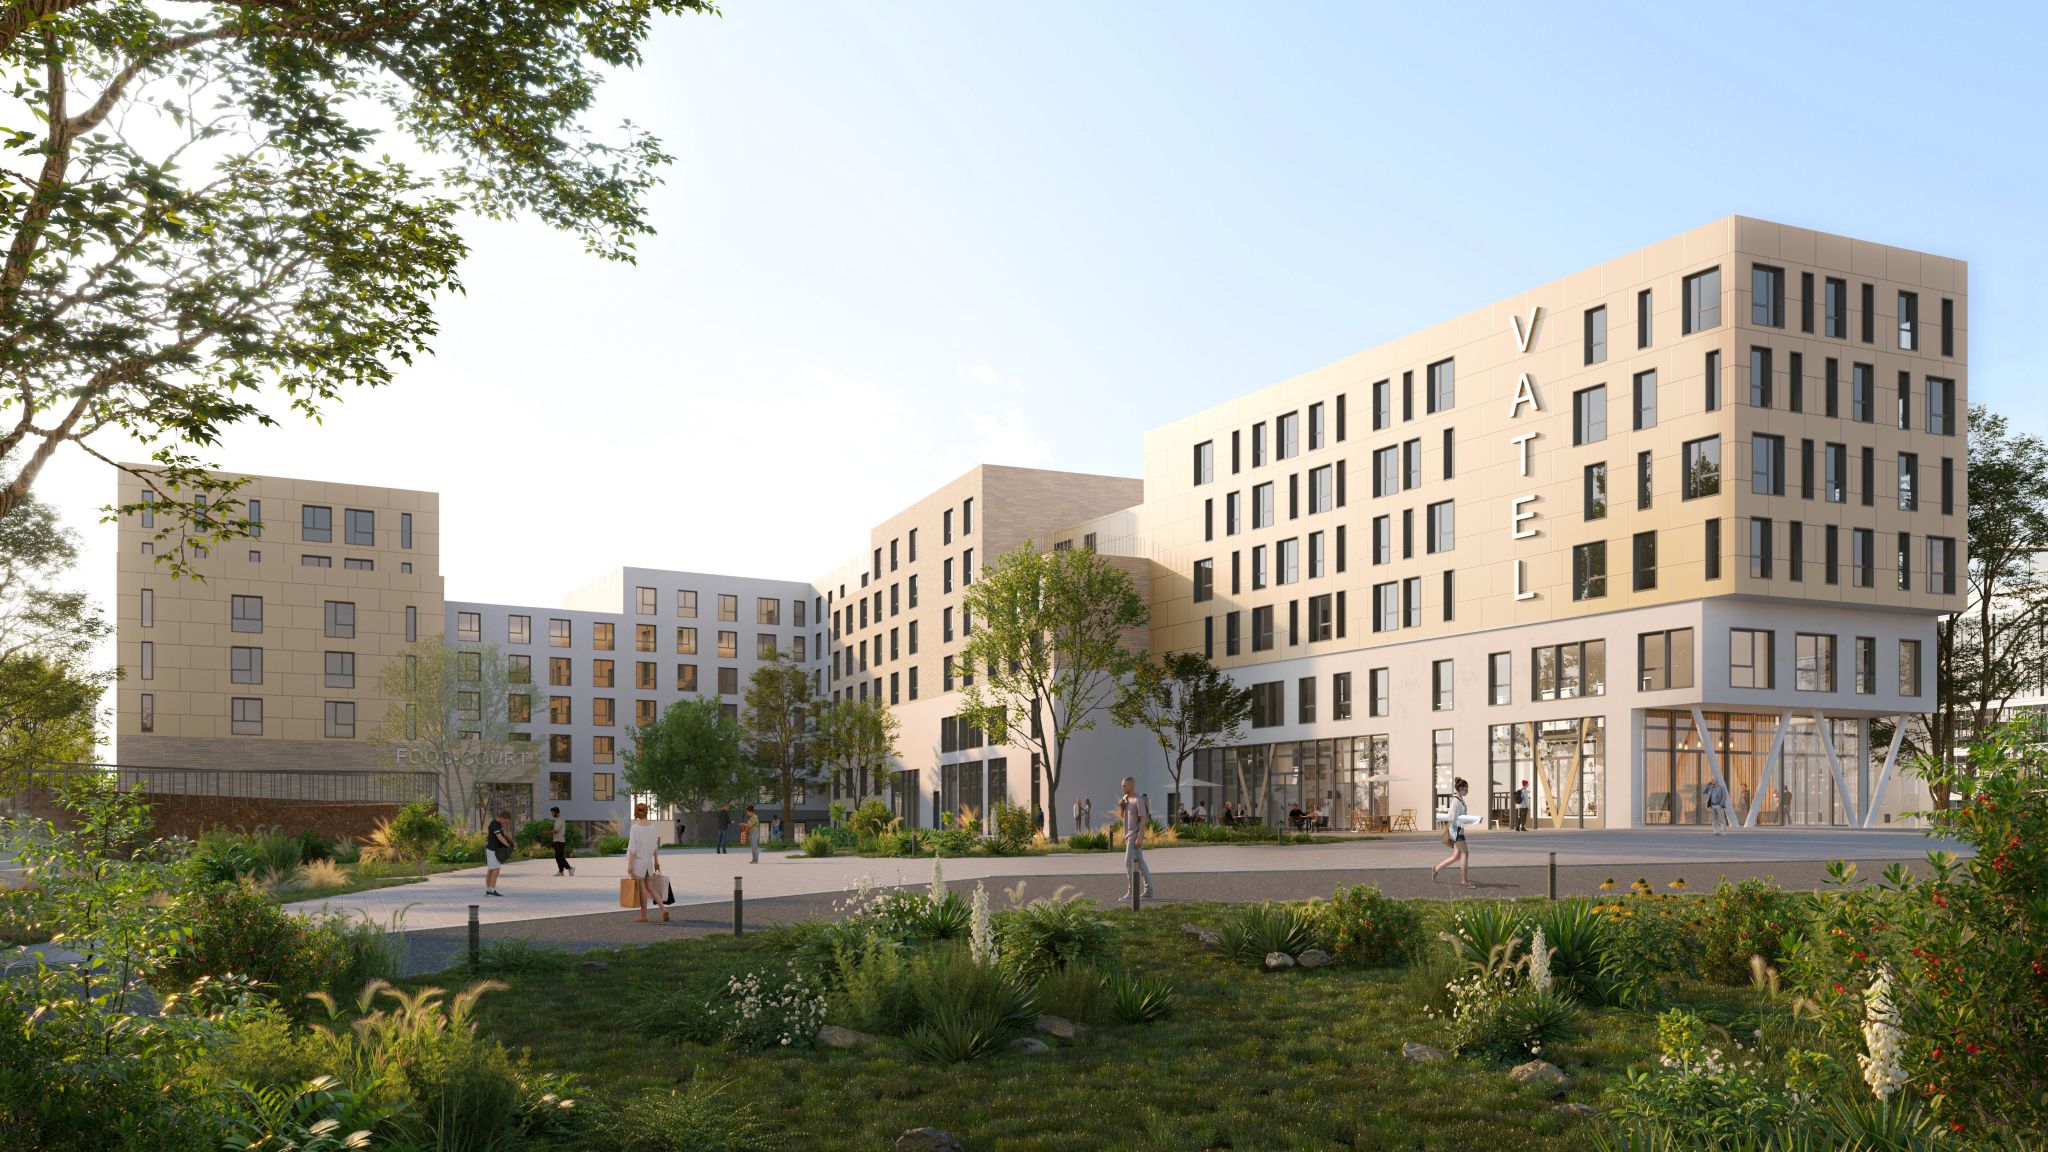 Vatel France, prestigieuse école hôtelière ouvrira un campus « Vatel Academy » dans le quartier Campus Gare à Roubaix en 2027